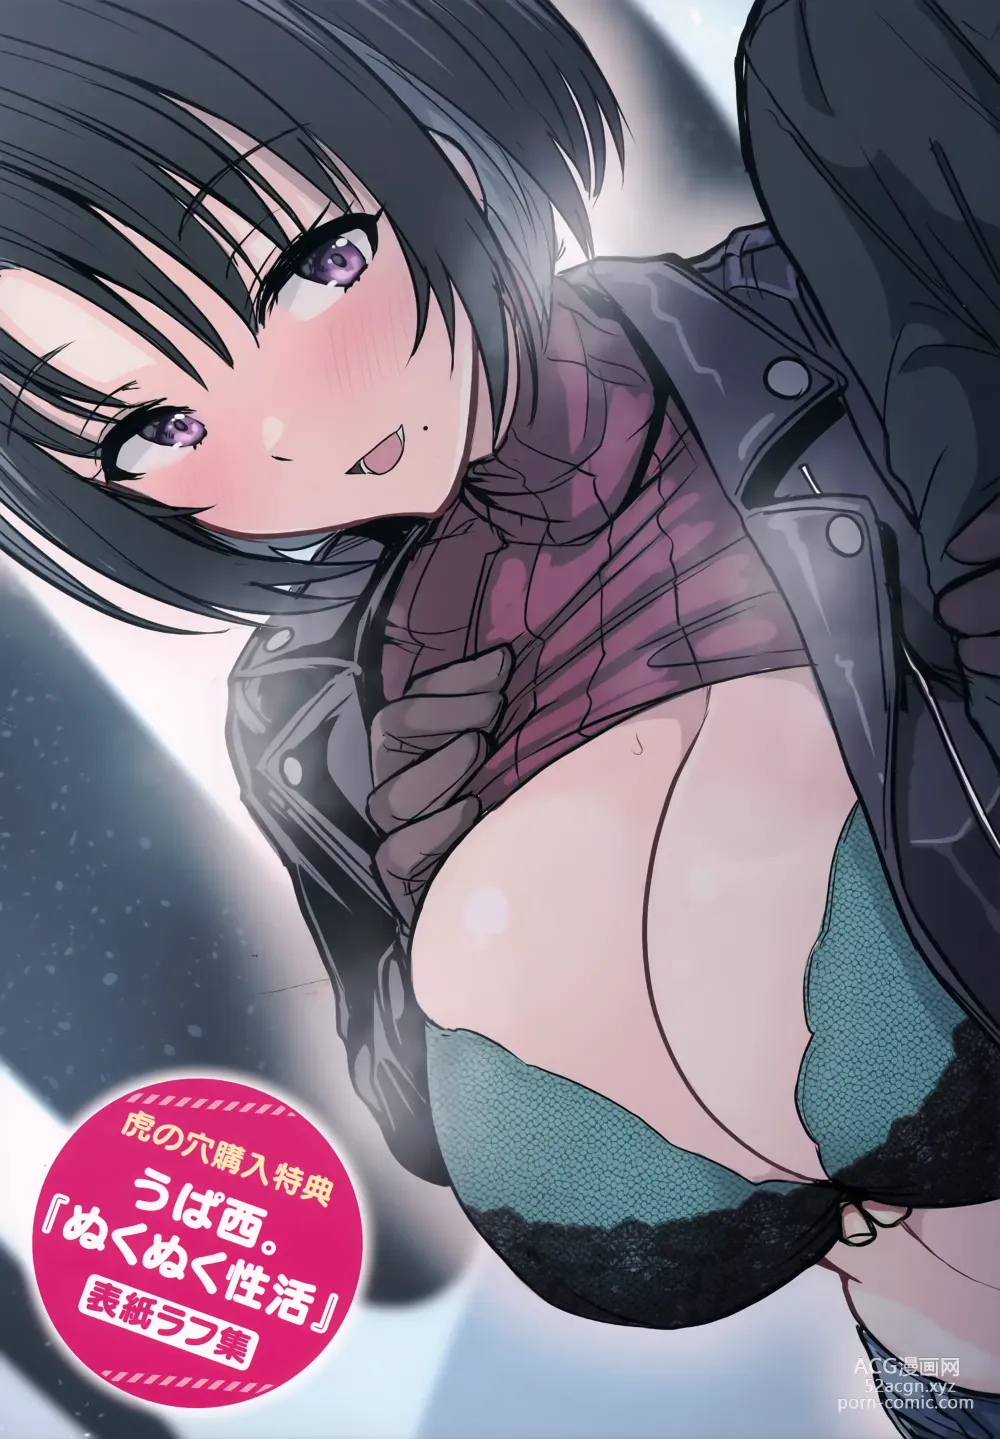 Page 173 of manga Nukunuku Seikatsu - Life Full of Sex + Melonbooks Kounyu Tokuten + Toranoana Kounyu Tokuten